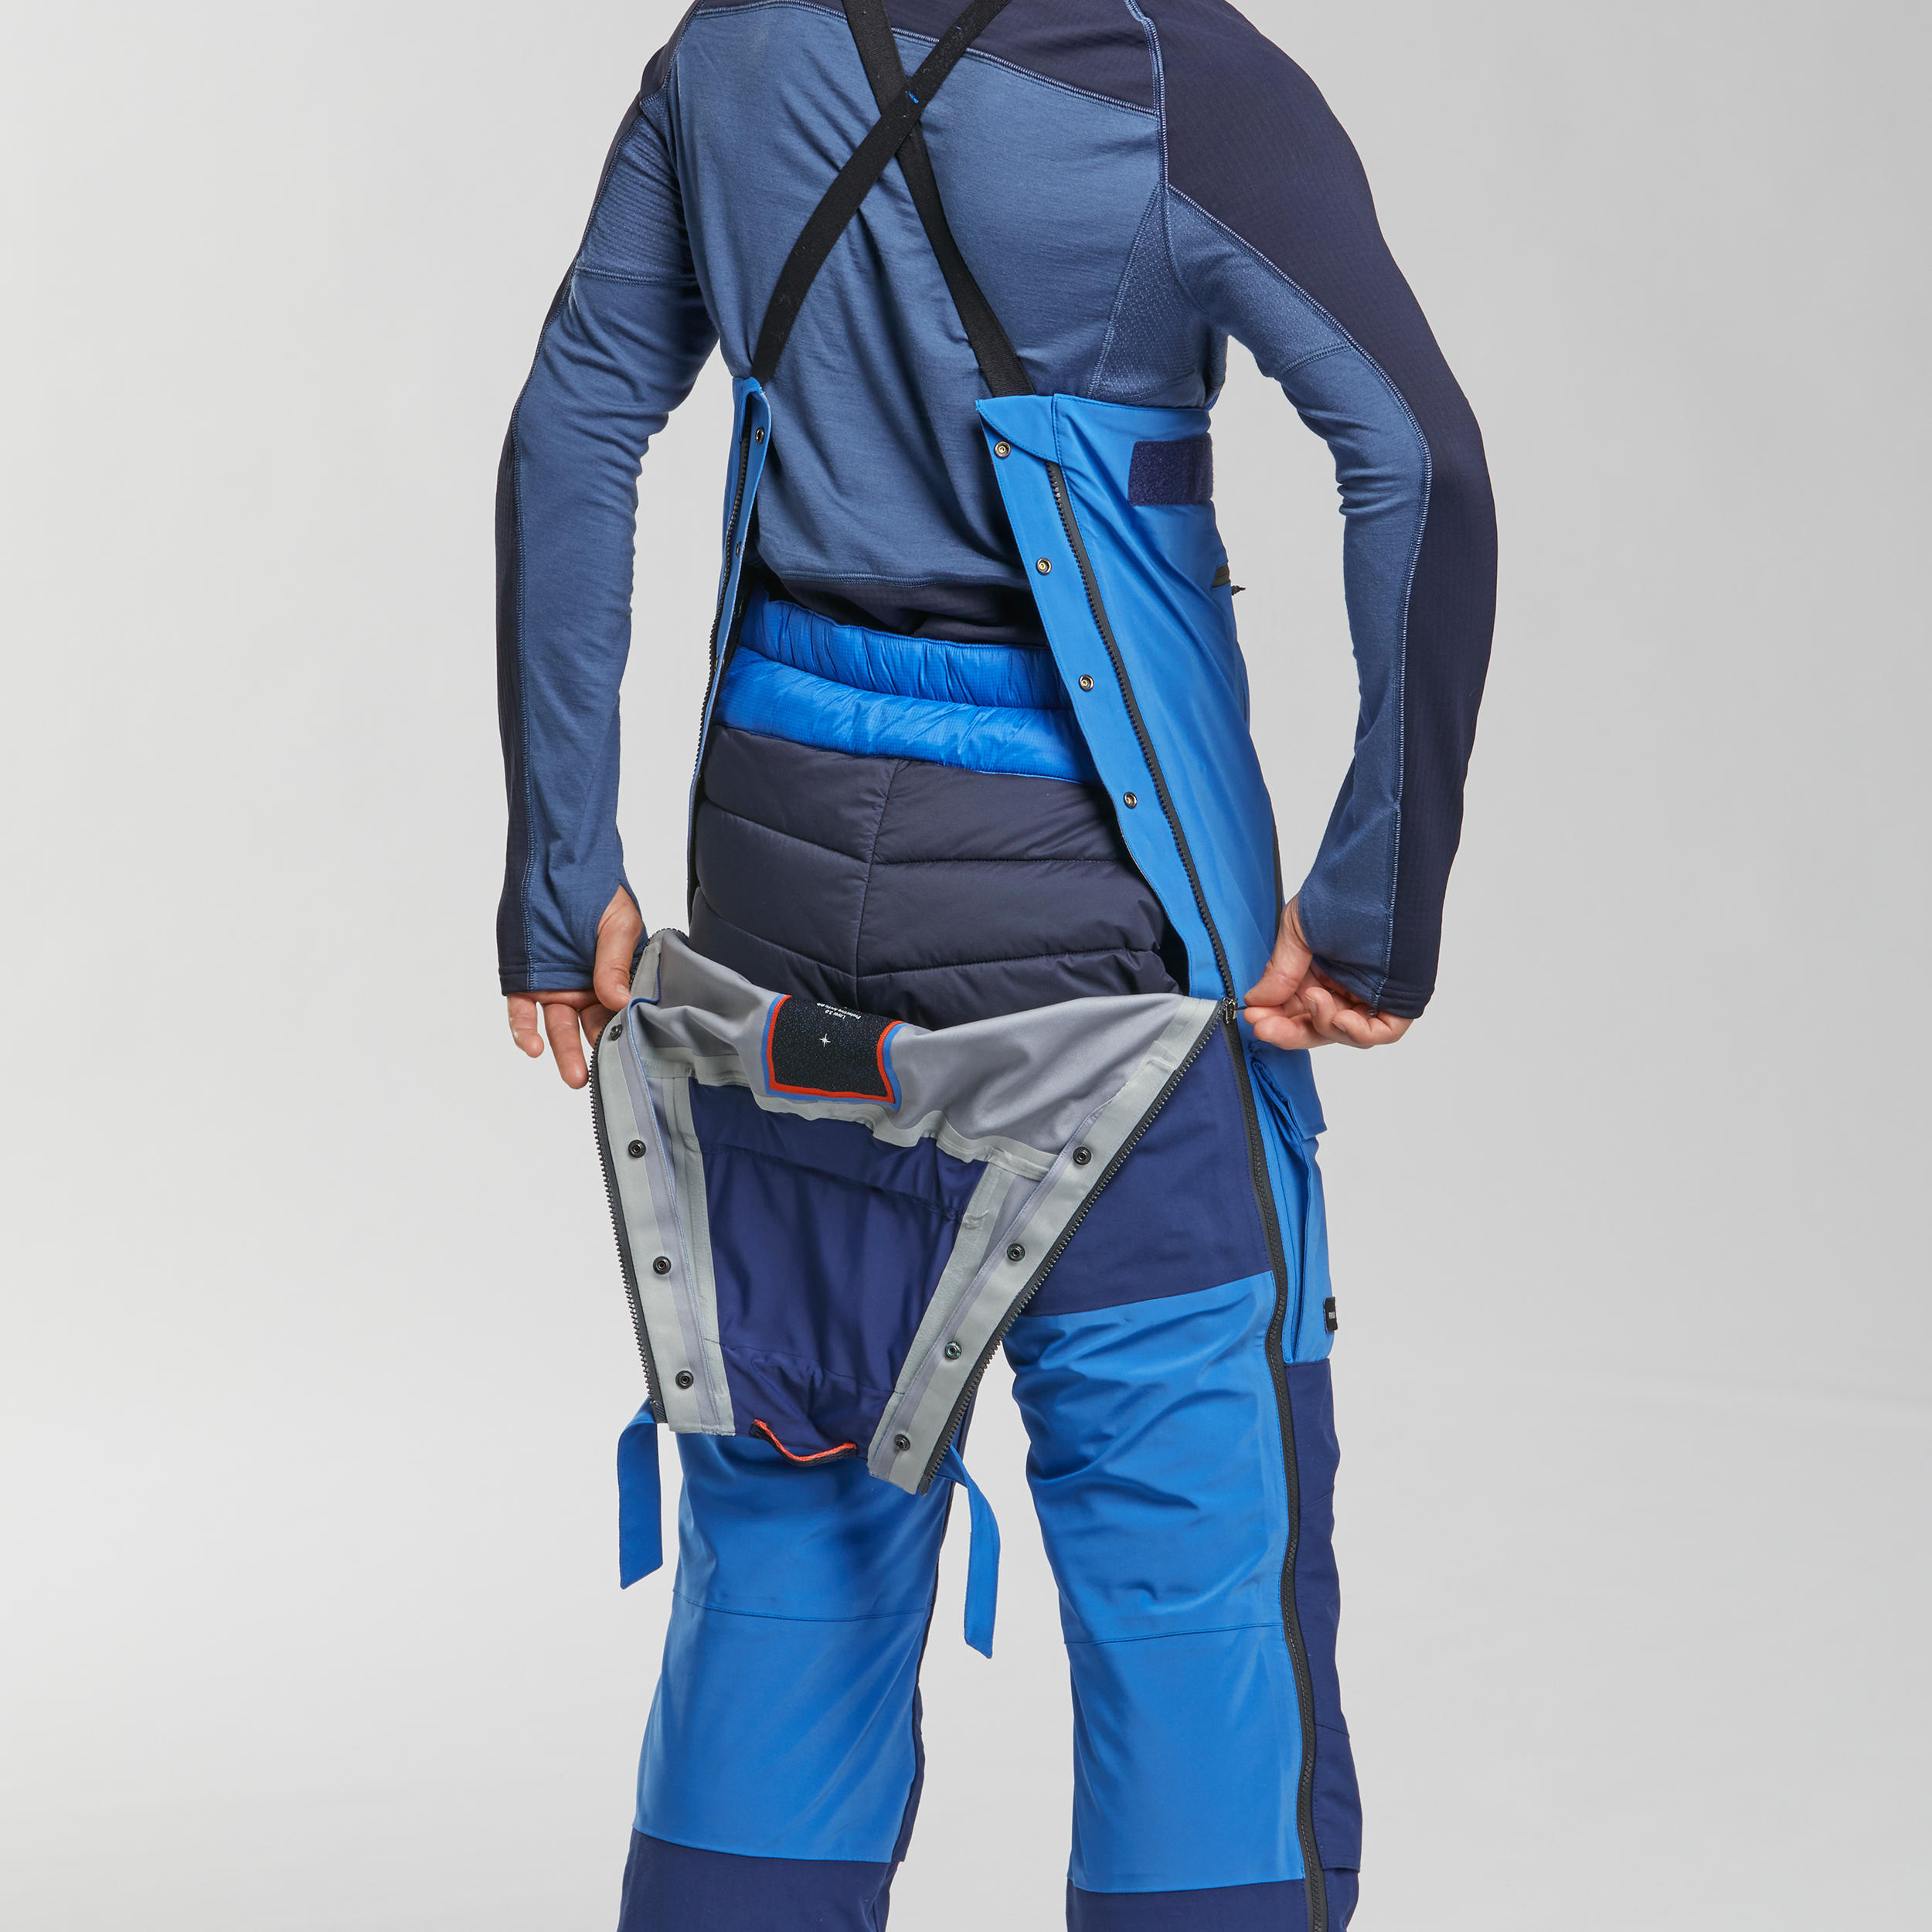 Waterproof 3-in-1 Trekking Pants - Warm 900 Blue - Galaxy blue, Royal blue  - Forclaz - Decathlon